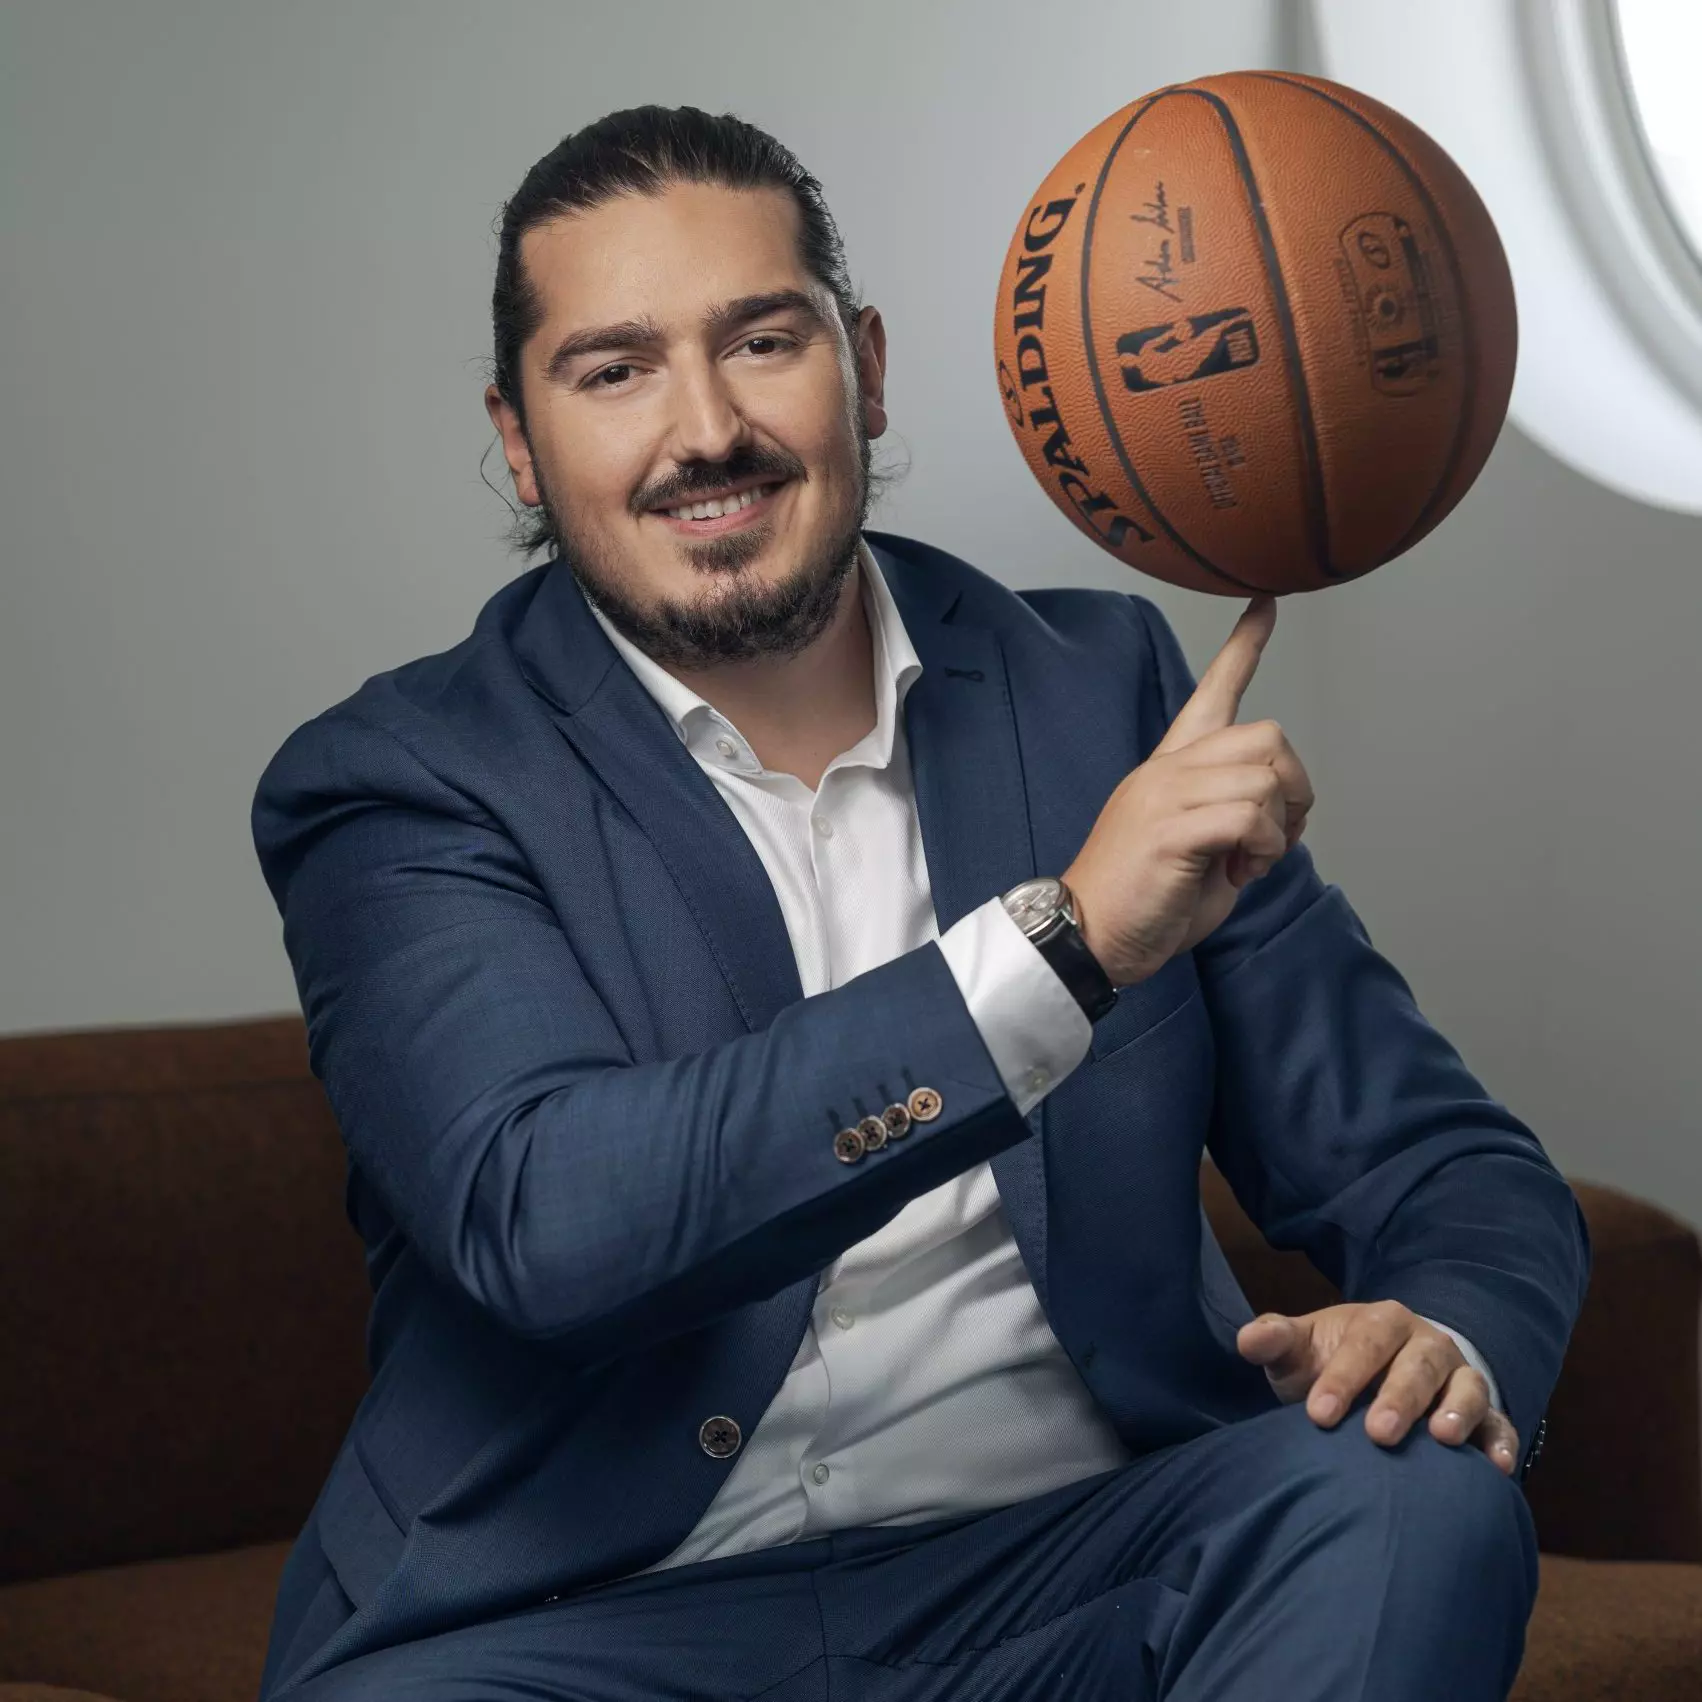 Kujtim Ljaci in einem Anzug, er dreht einen Basketball auf seinem Finger und lächelt.